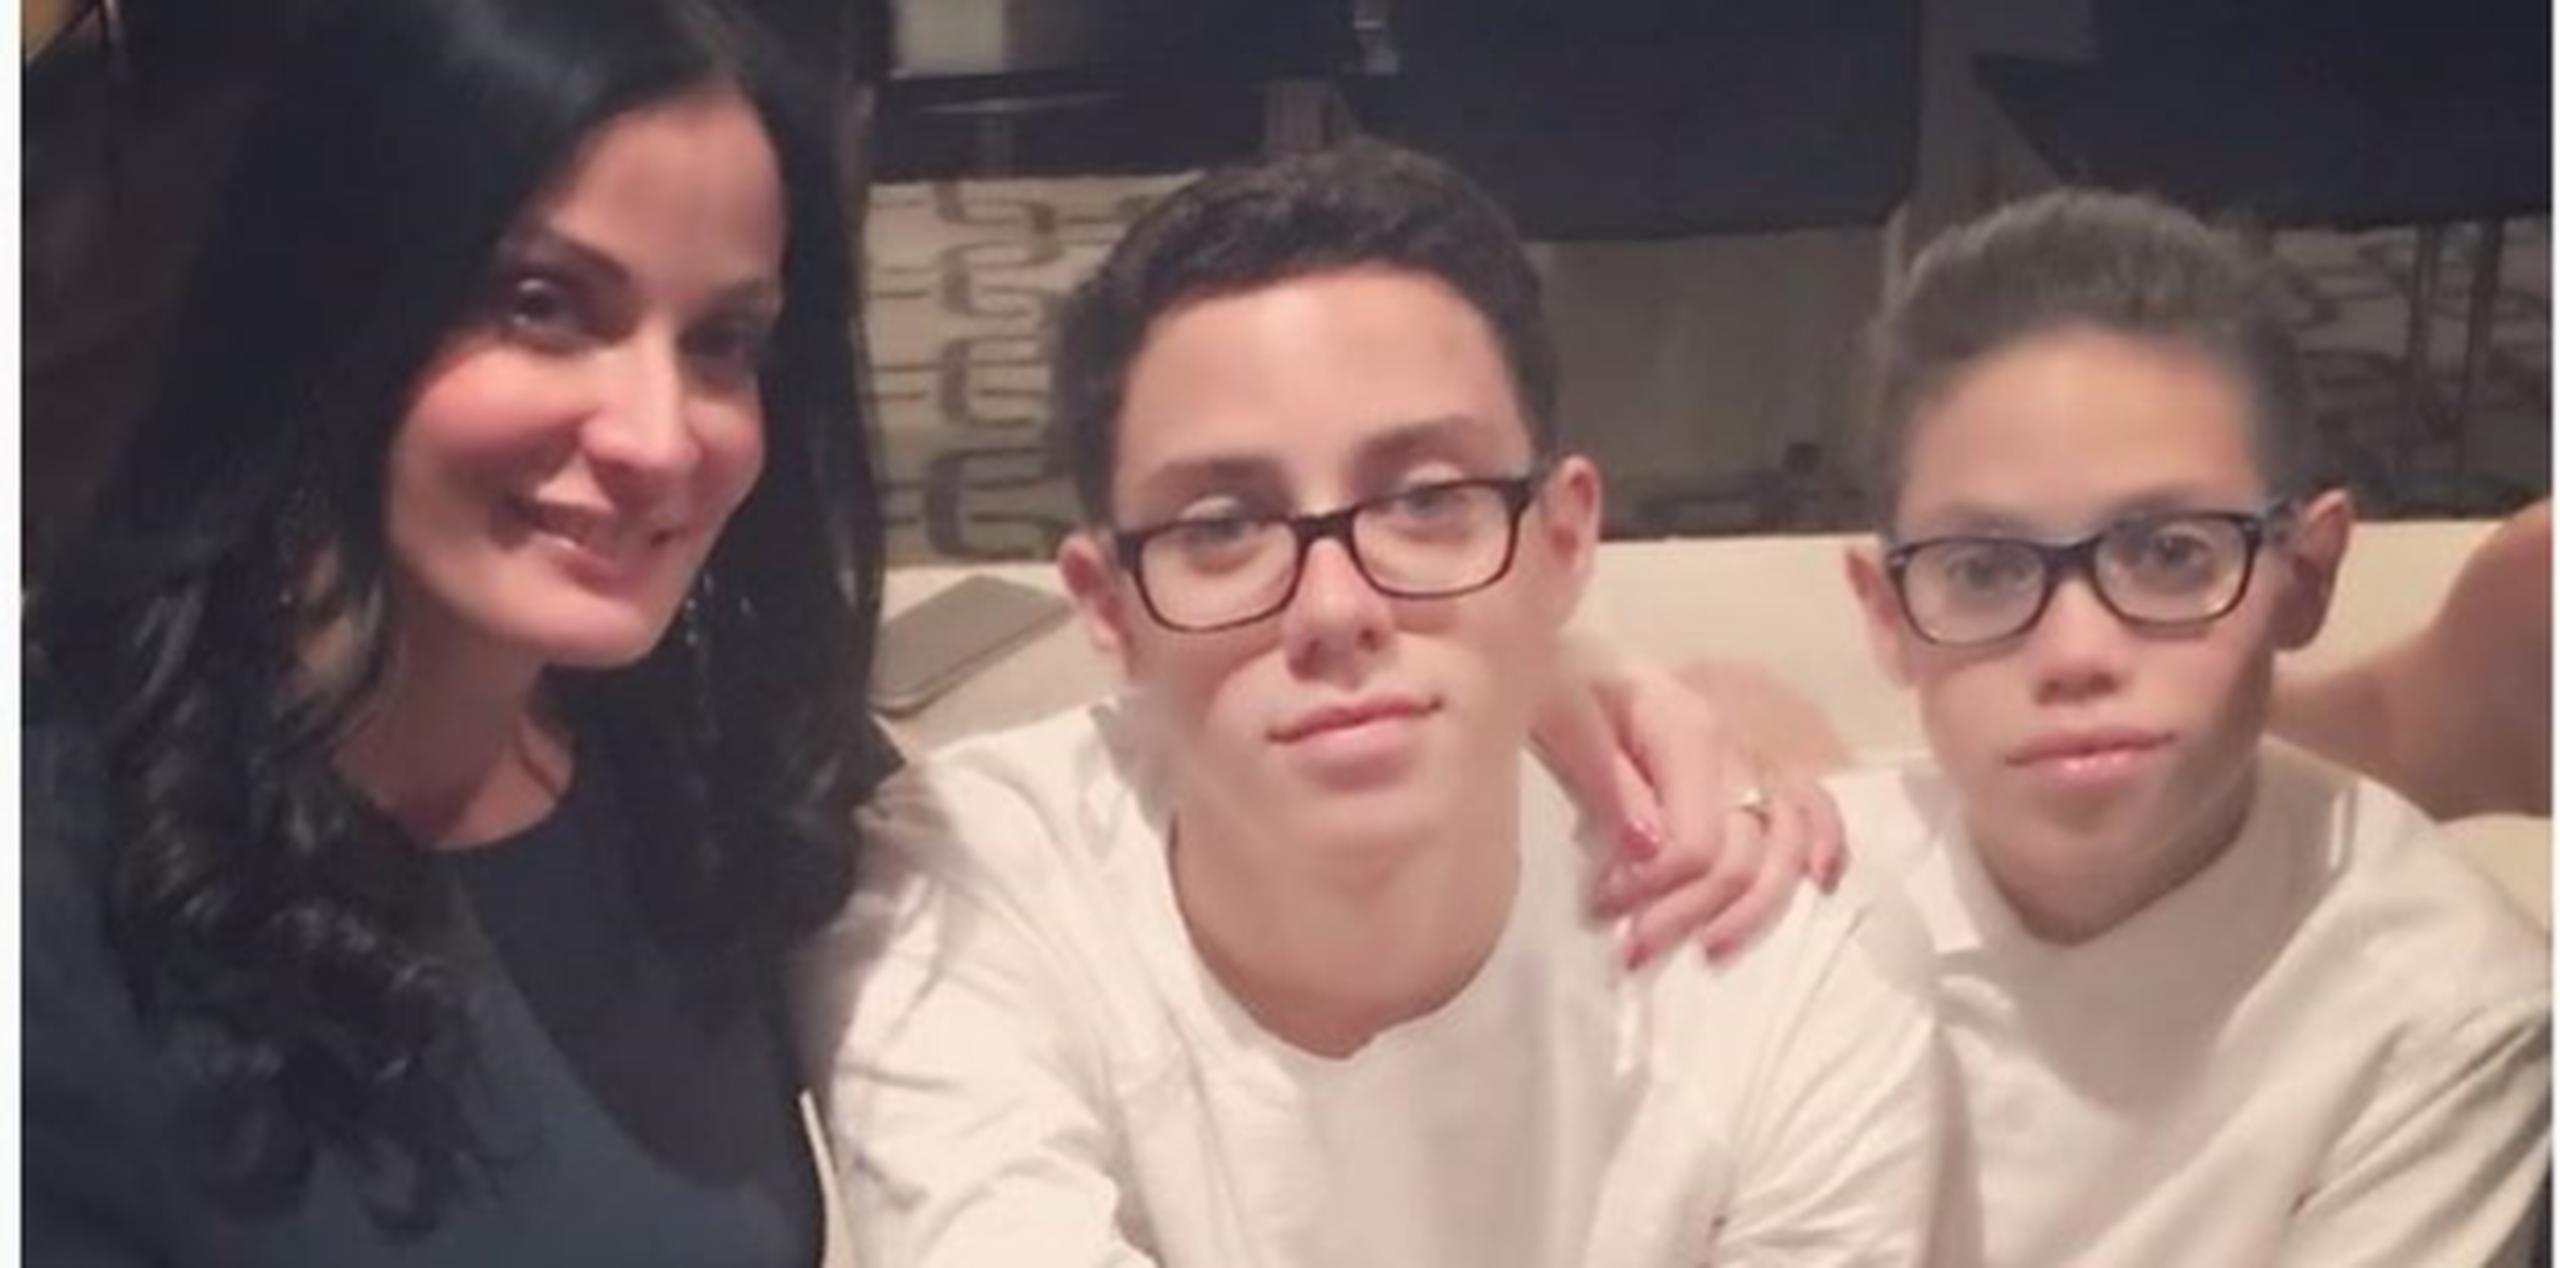 El asombroso parecido de Cristian y Ryan con su progenitor es incuestionable, aunque ambos heredaron los ojos azules de su mamá. (Instagram)